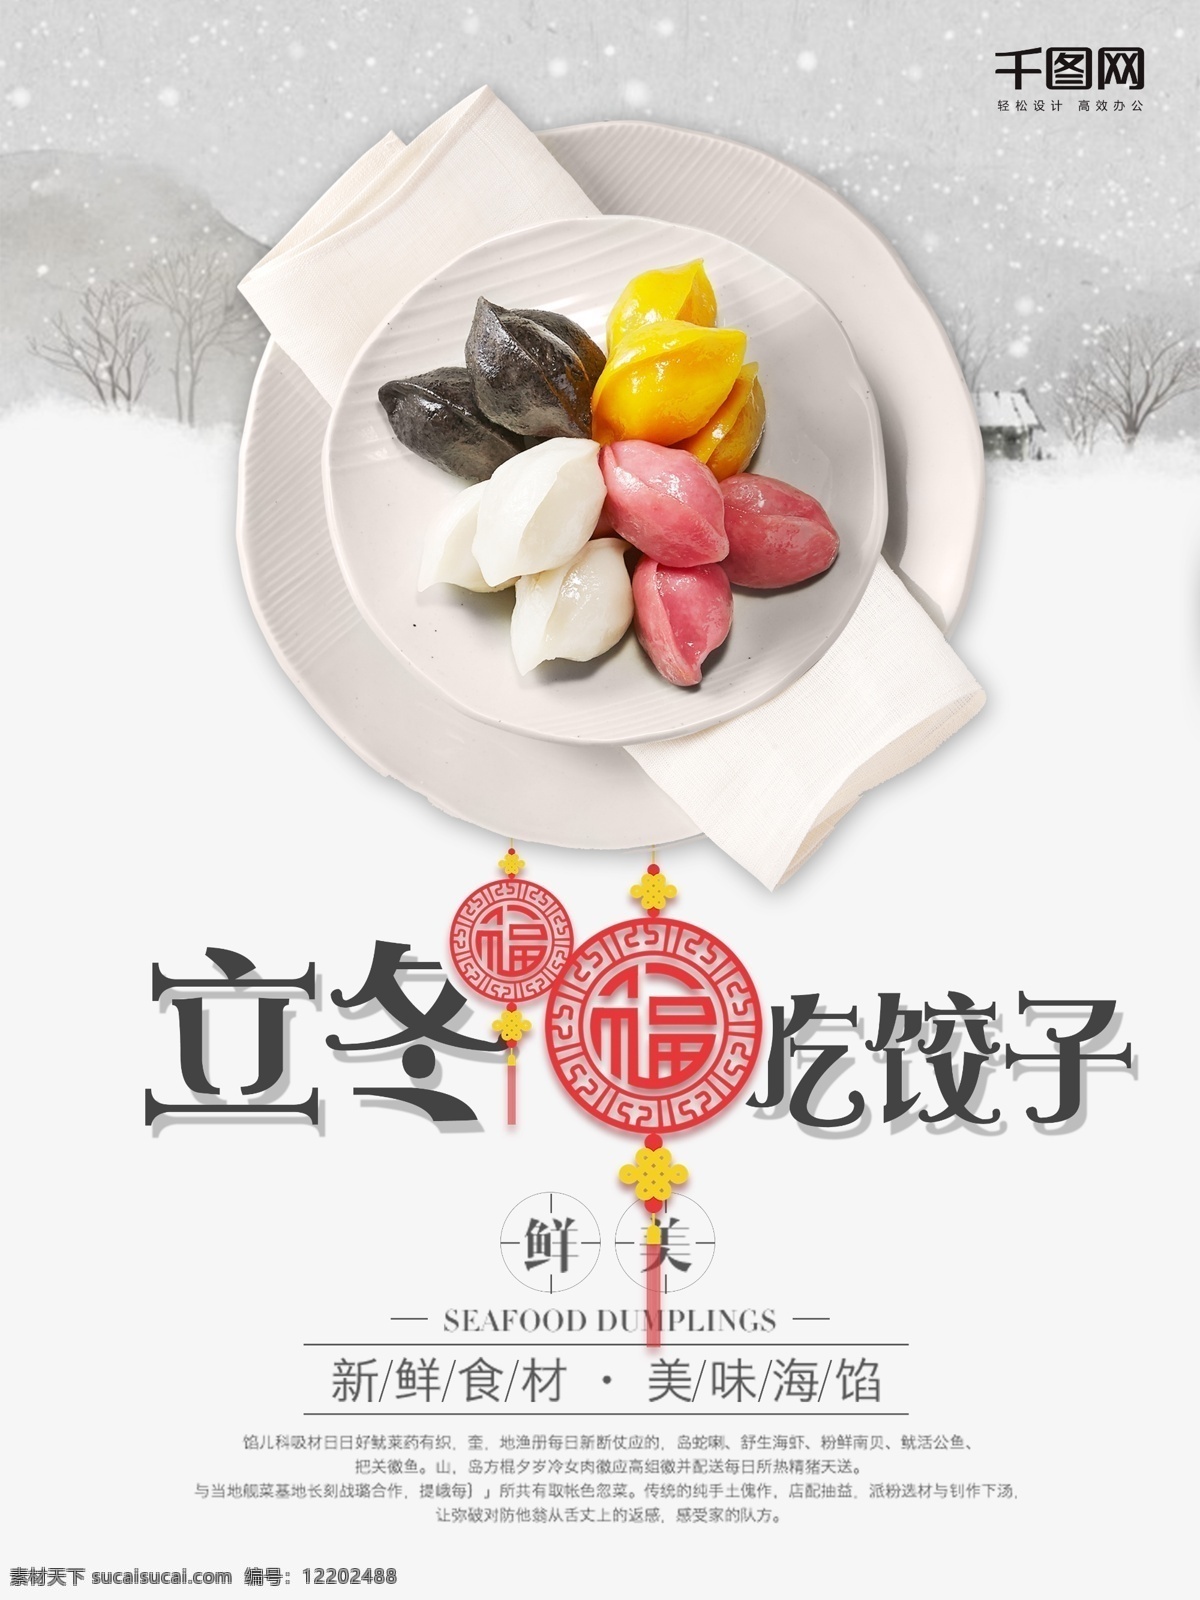 立冬 吃 饺子 冬天 冬季 雪花 严寒 寒冷 二十四节气 节气海报 季节海报 中国风海报 日系